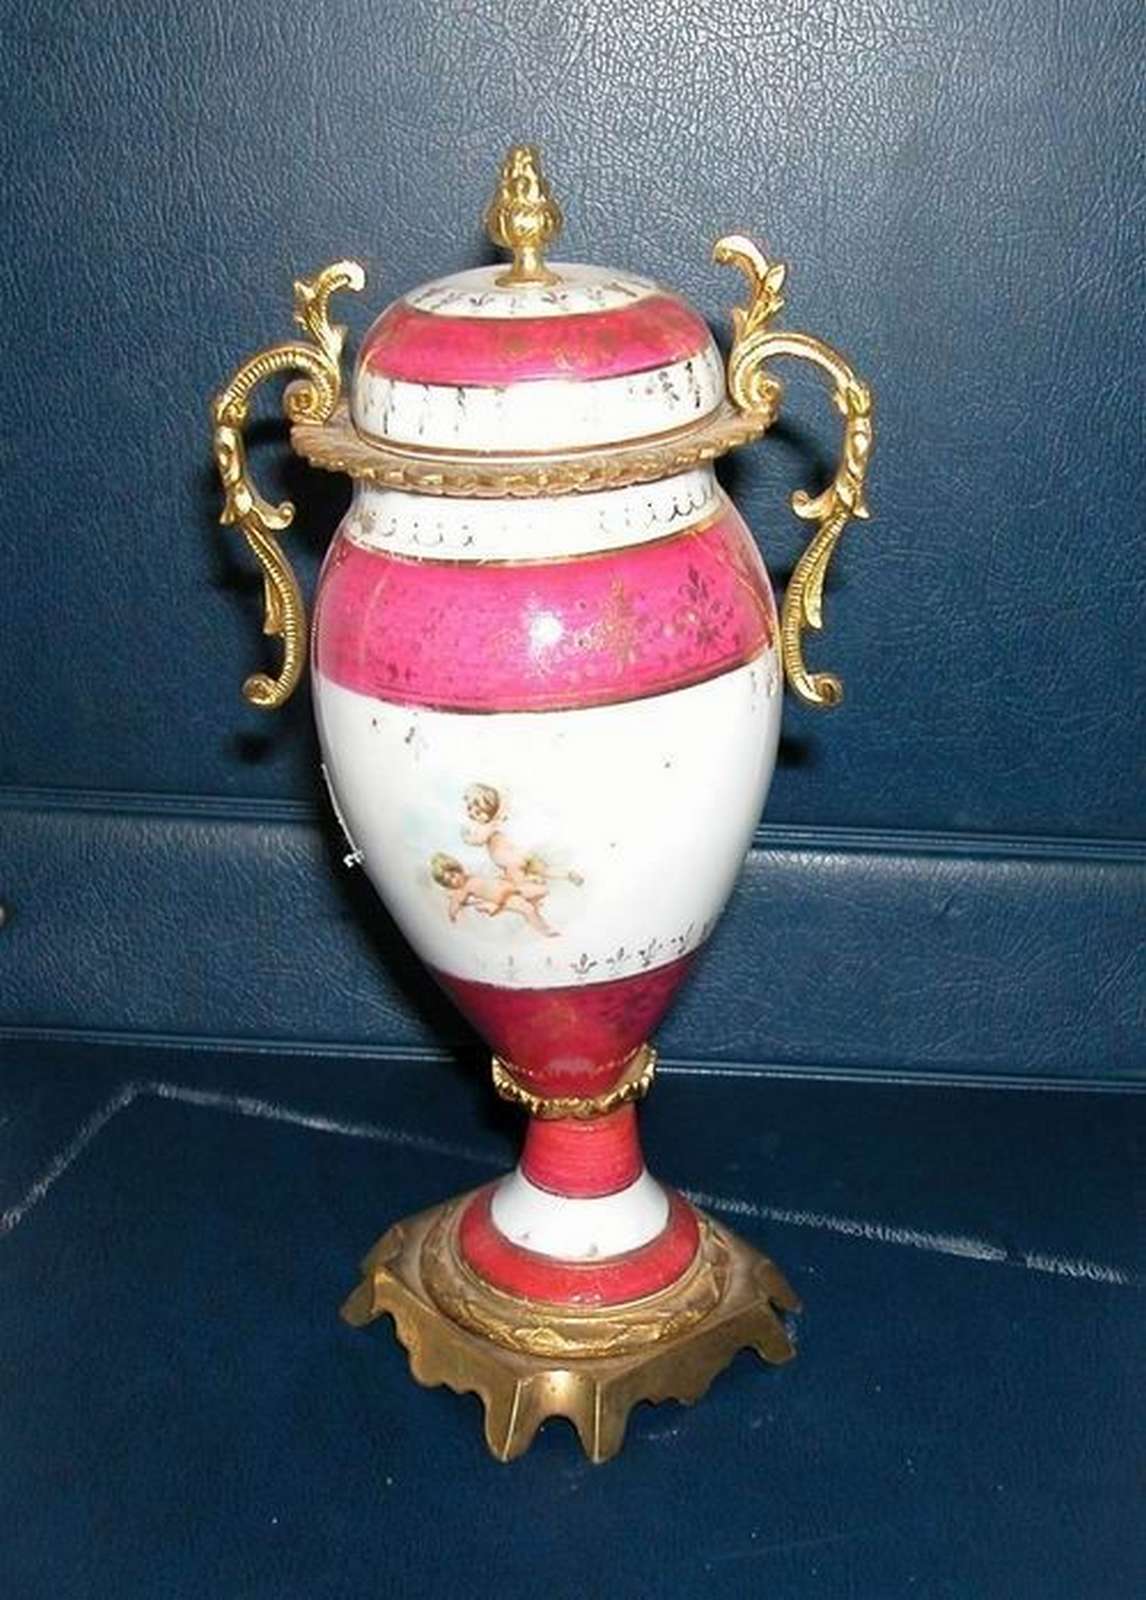 Antico vaso in maiolica - Ceramiche - Oggettistica - Prodotti - Antichità Fiorillo